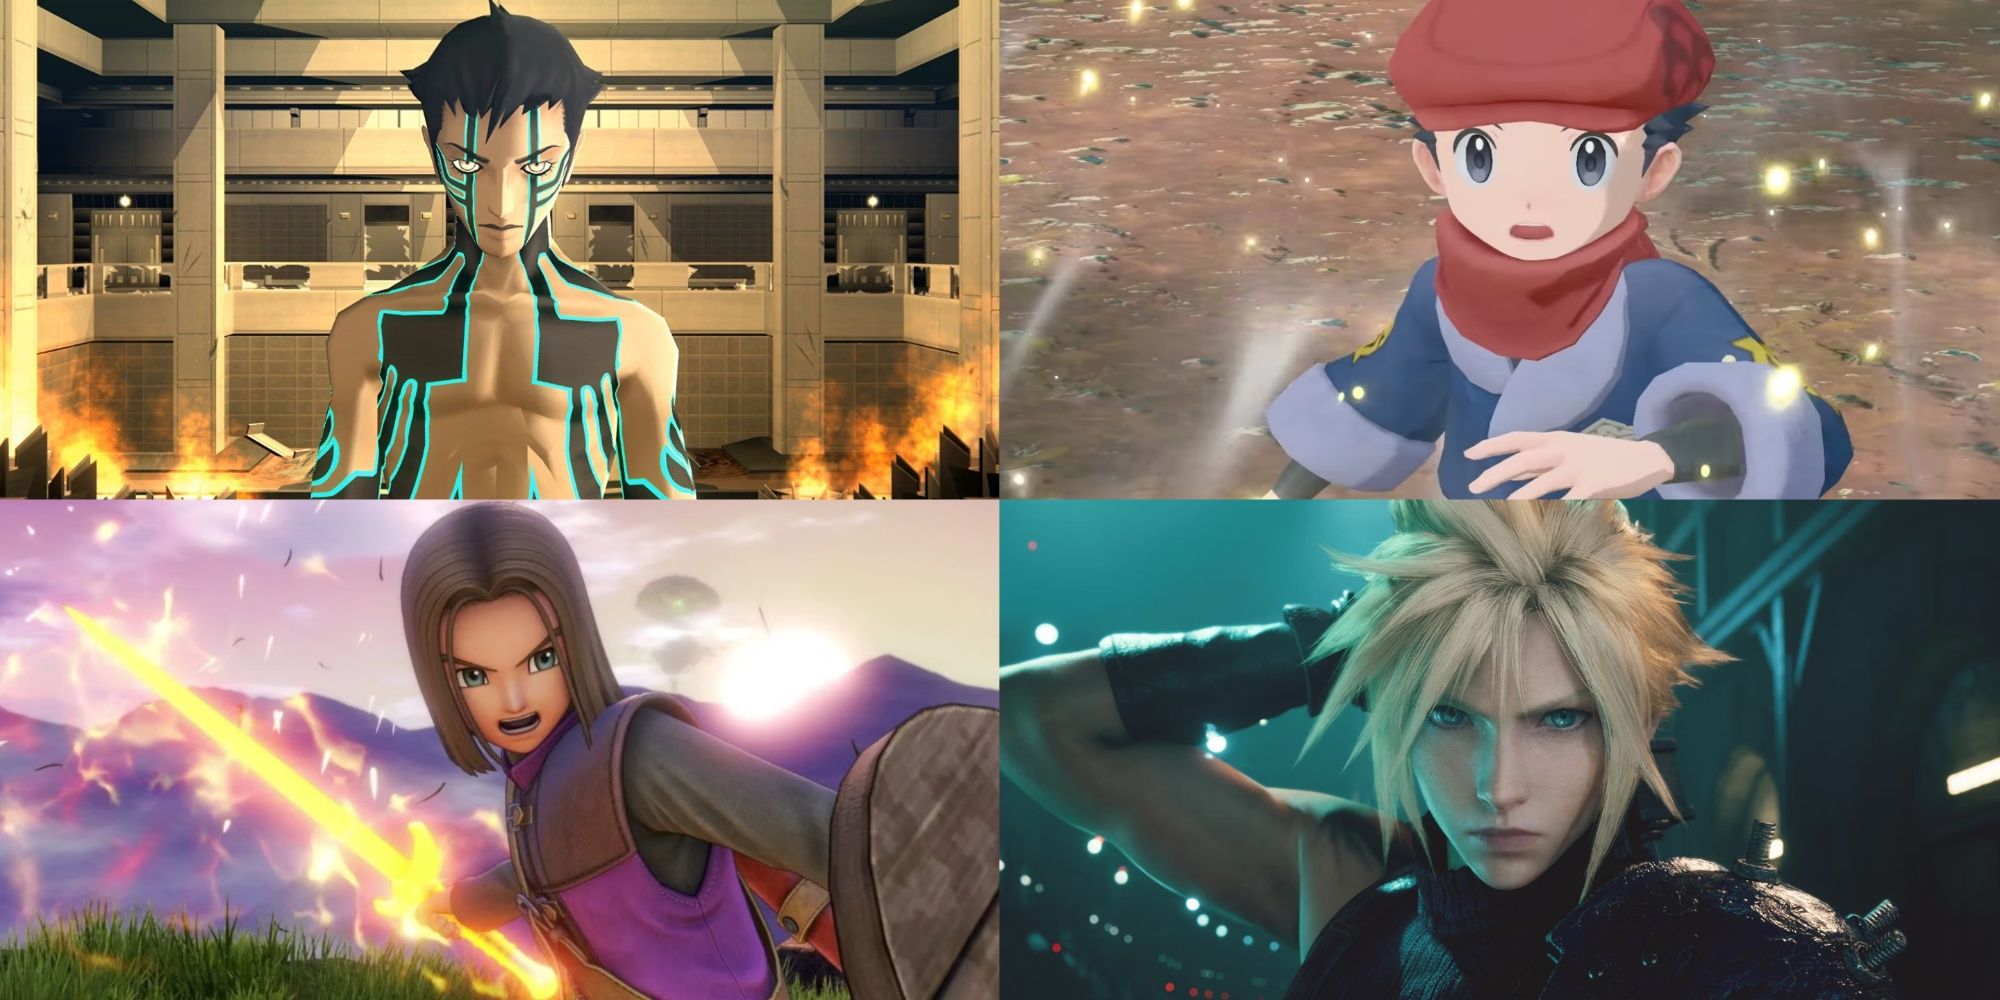 Shin megami Tensei, Pokemon, Dragon Quest 11 and Final Fantasy 7 leads feature image